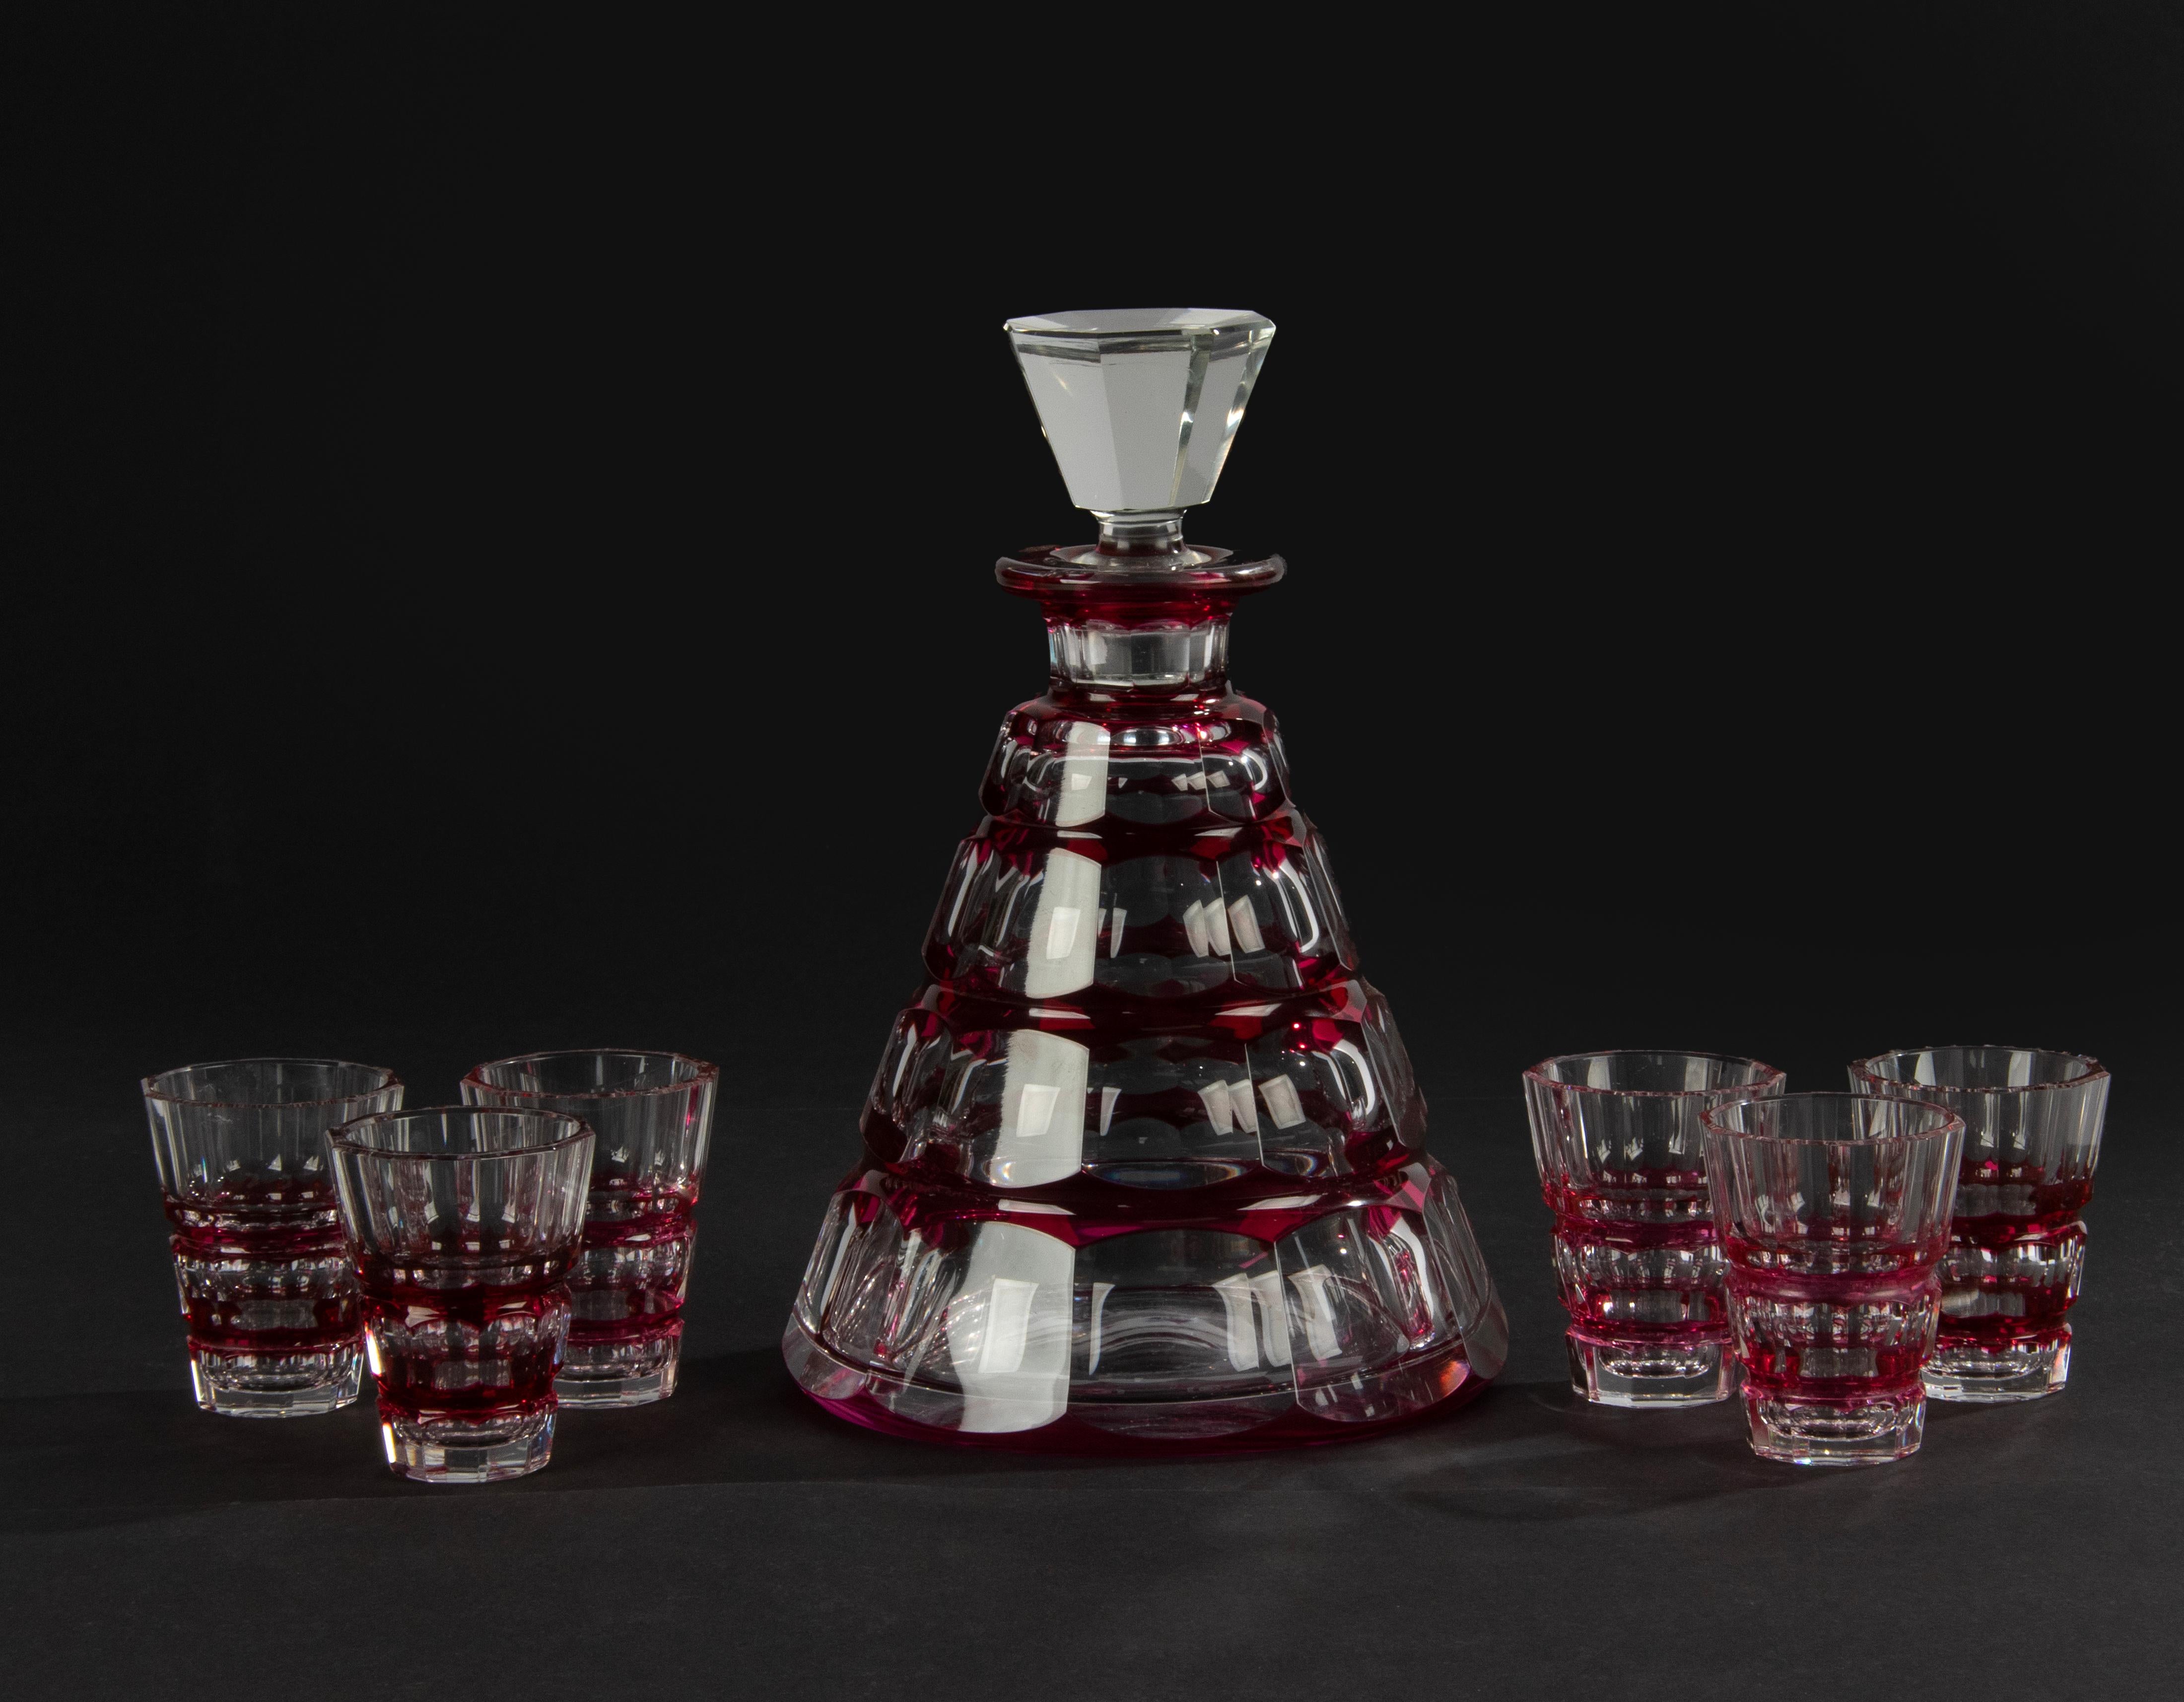 Une belle carafe en cristal avec six verres assortis, fabriquée par la marque belge Val Saint Lambert. Belle combinaison de couleurs de cristal rouge et clair, joliment taillé. La carafe n'est pas marquée (les pièces de cette période de VSL ne sont